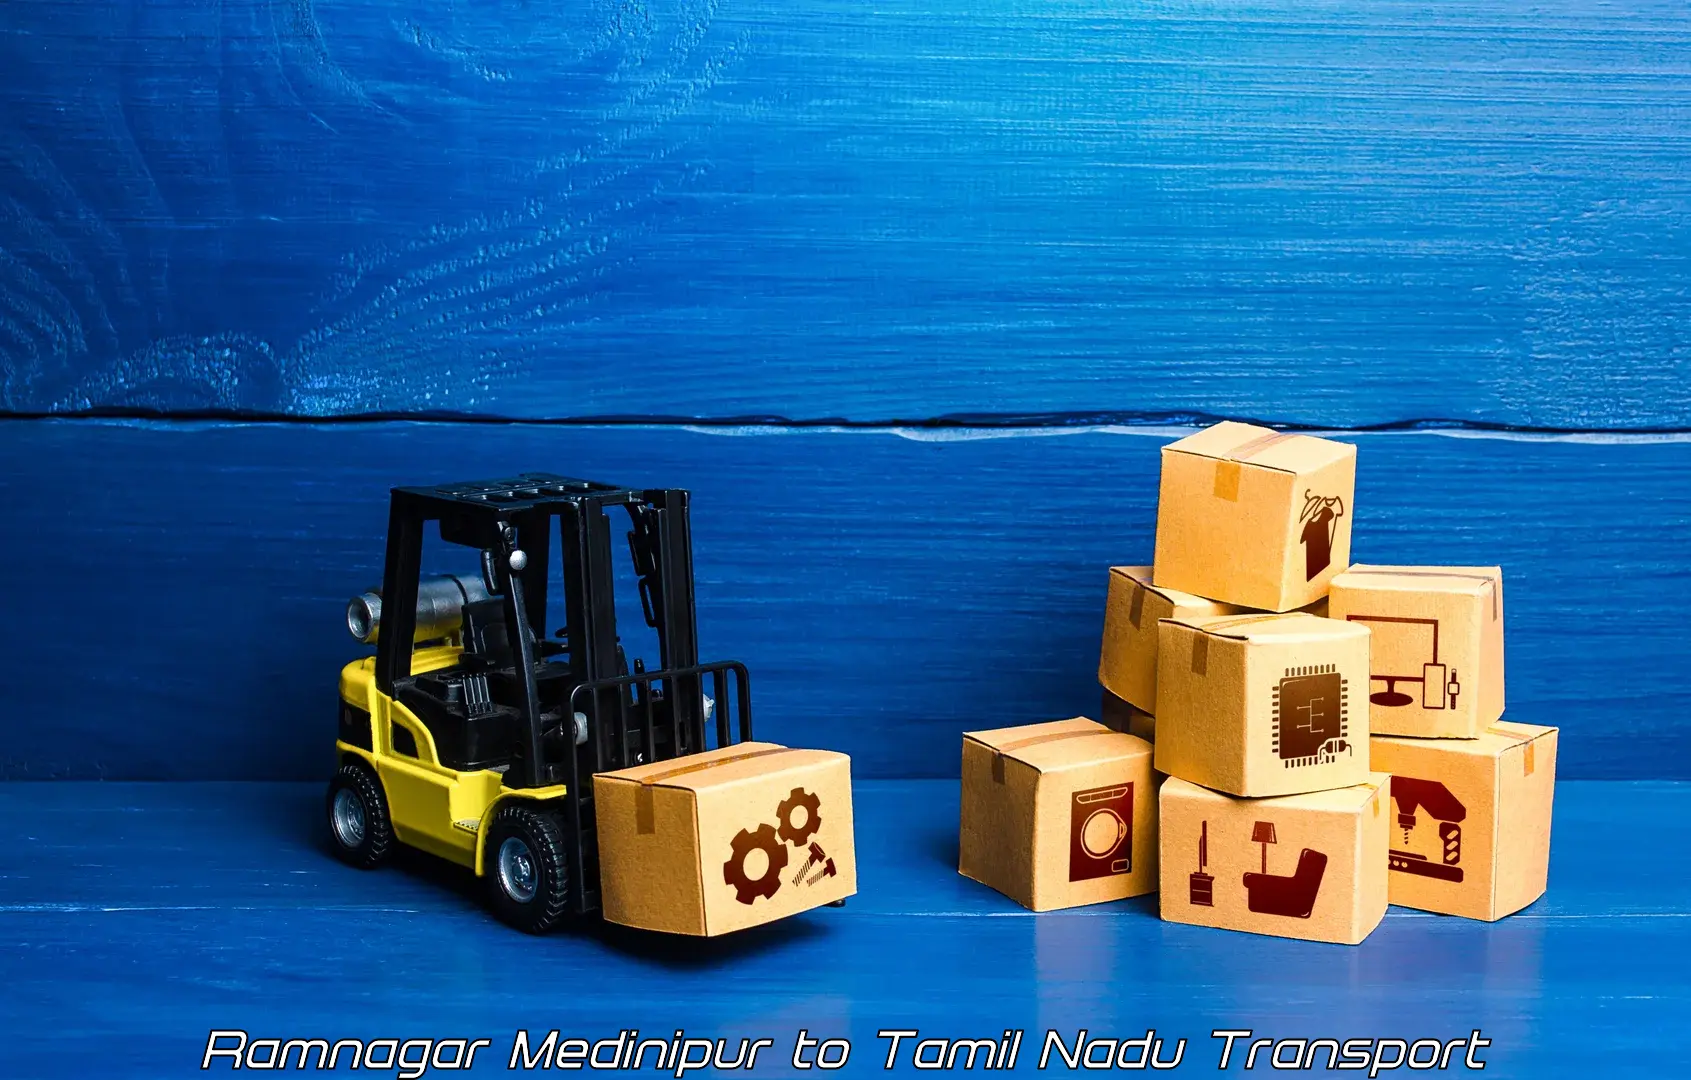 Transport in sharing in Ramnagar Medinipur to Tamil Nadu